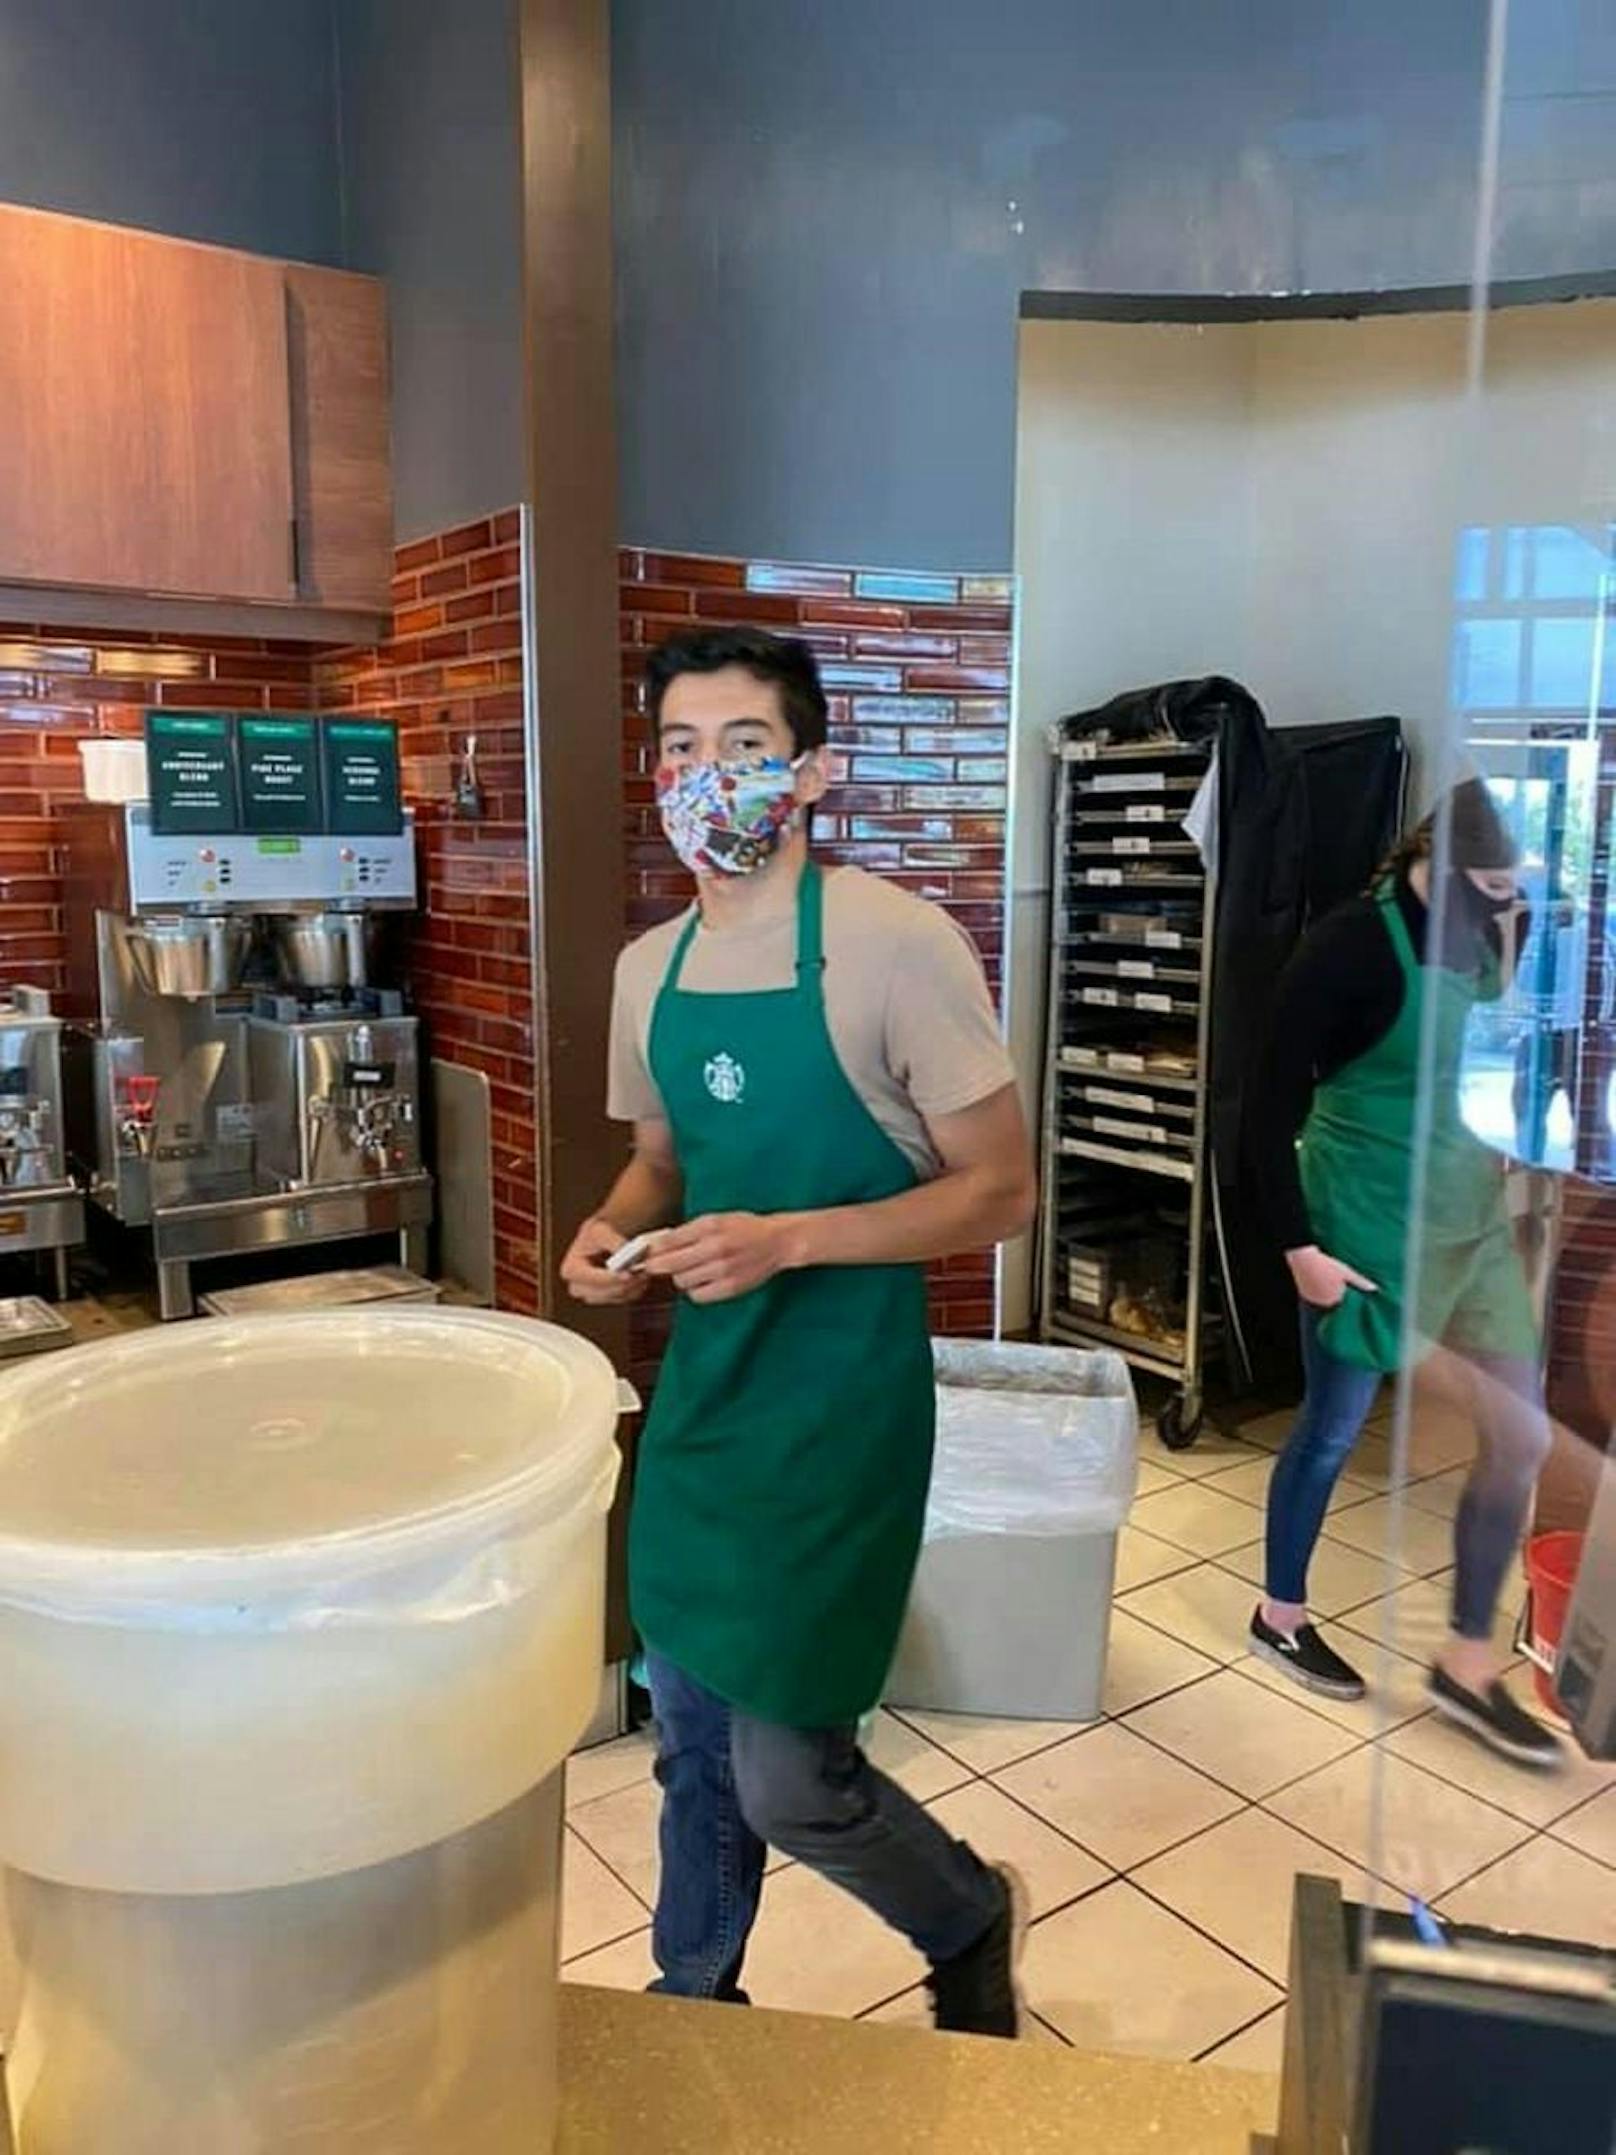 100.000 $ Trinkgeld wegen Maskenstreit bei Starbucks